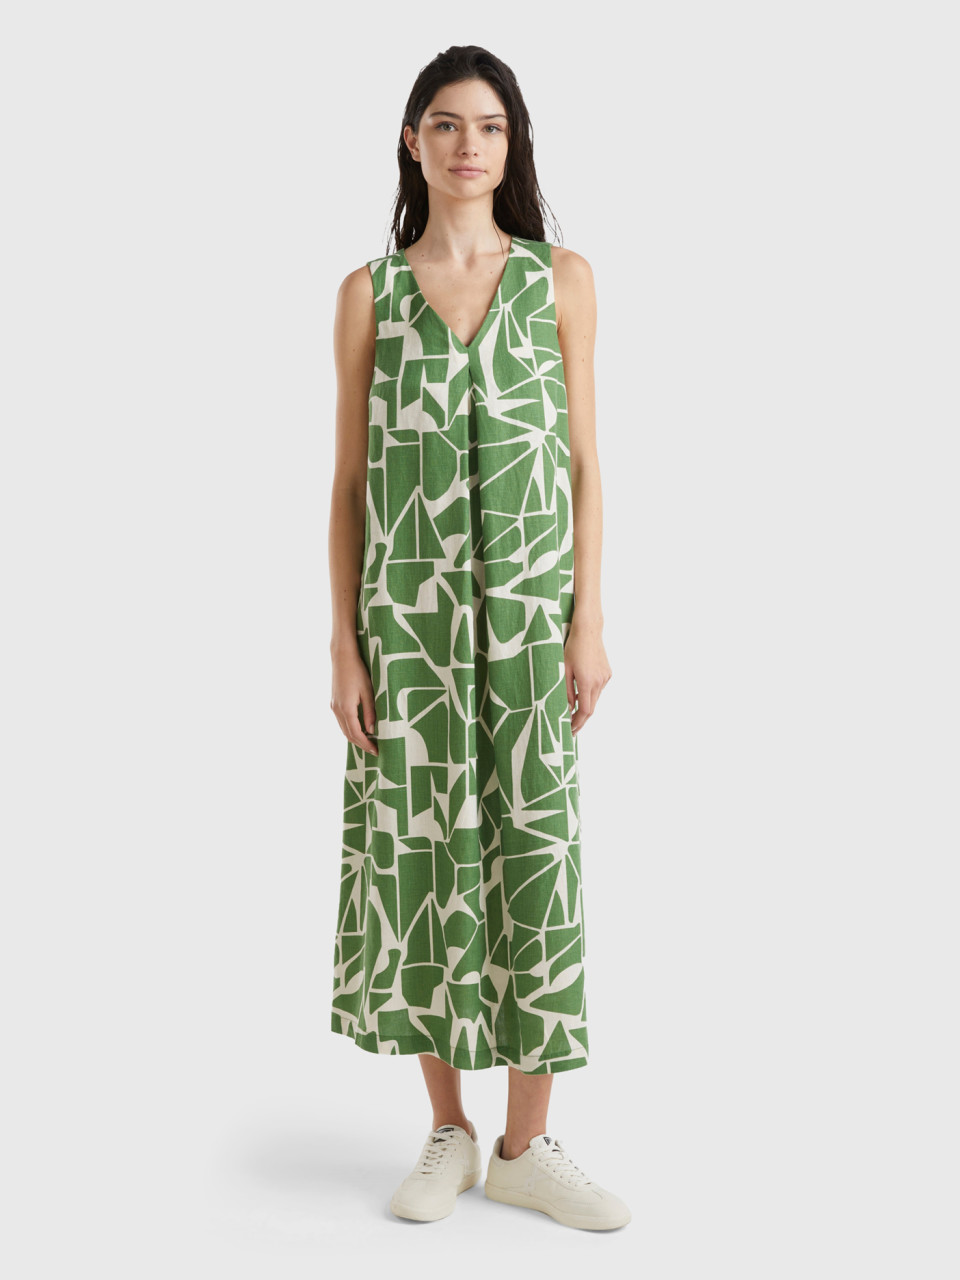 Benetton, Printed Linen Dress, Military Green, Women